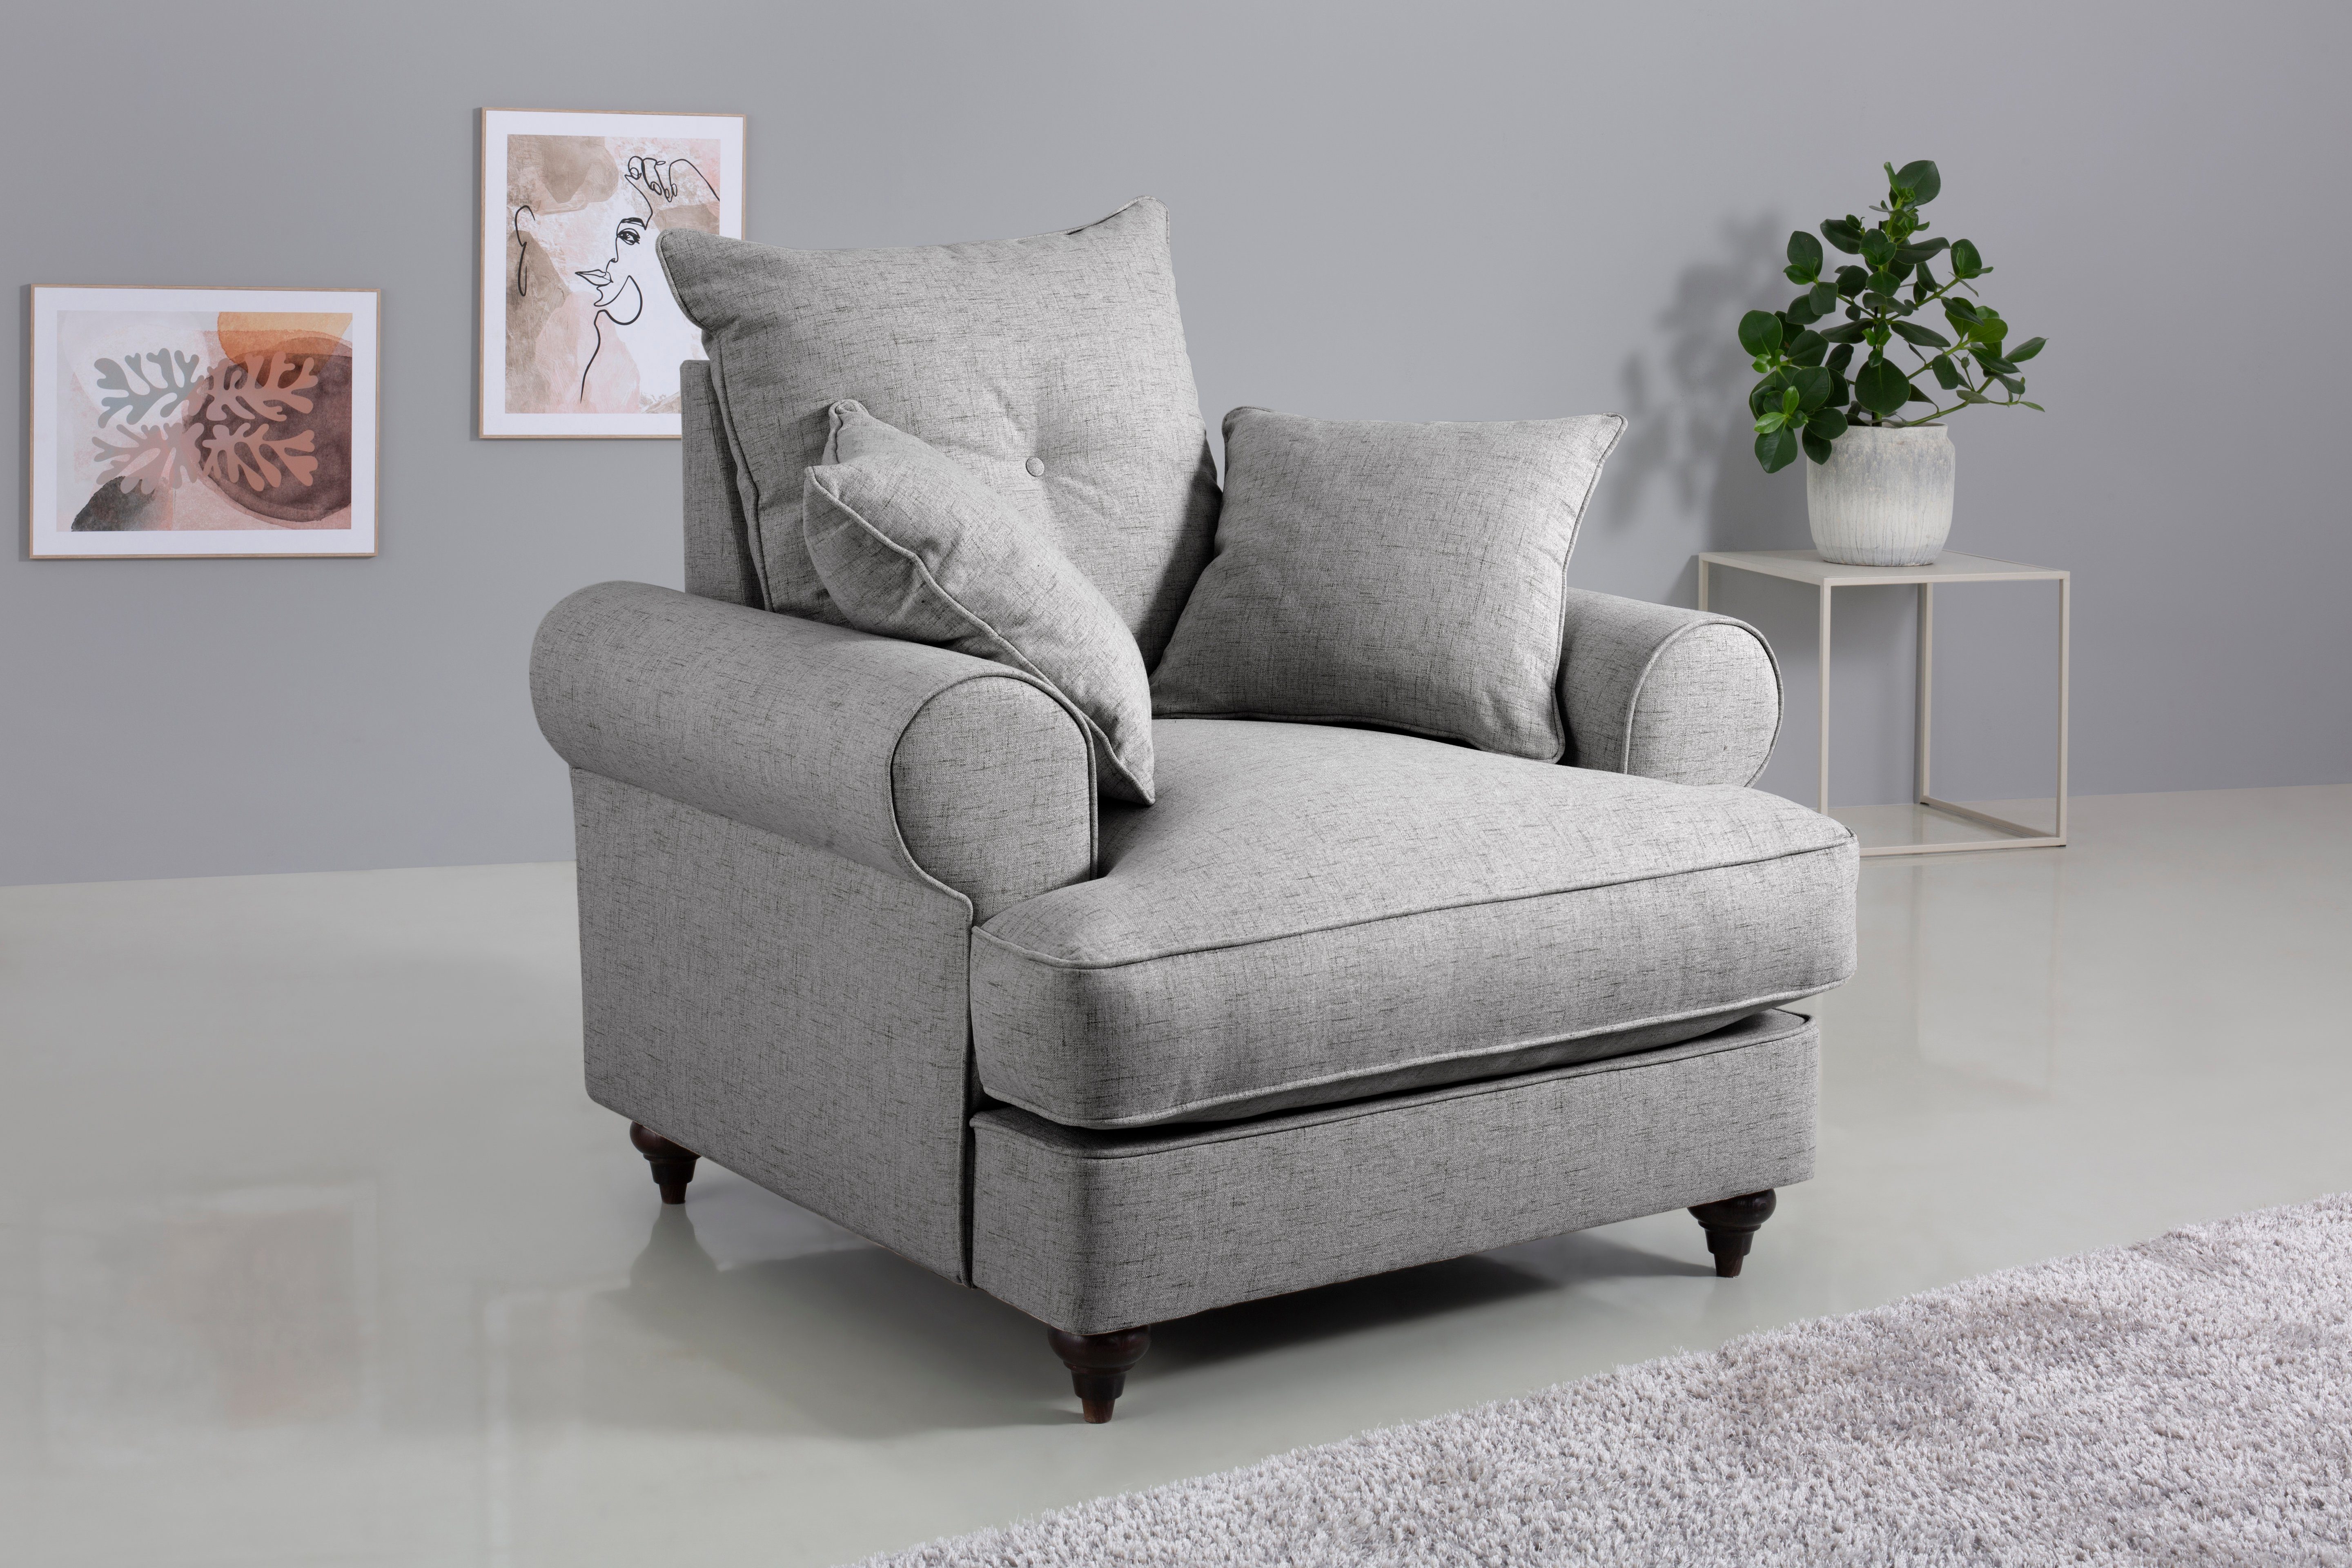 Home affaire Sessel Bloomer, mit hochwertigem Kaltschaum, in verschiedenen Farben erhältlich light grey | Einzelsessel